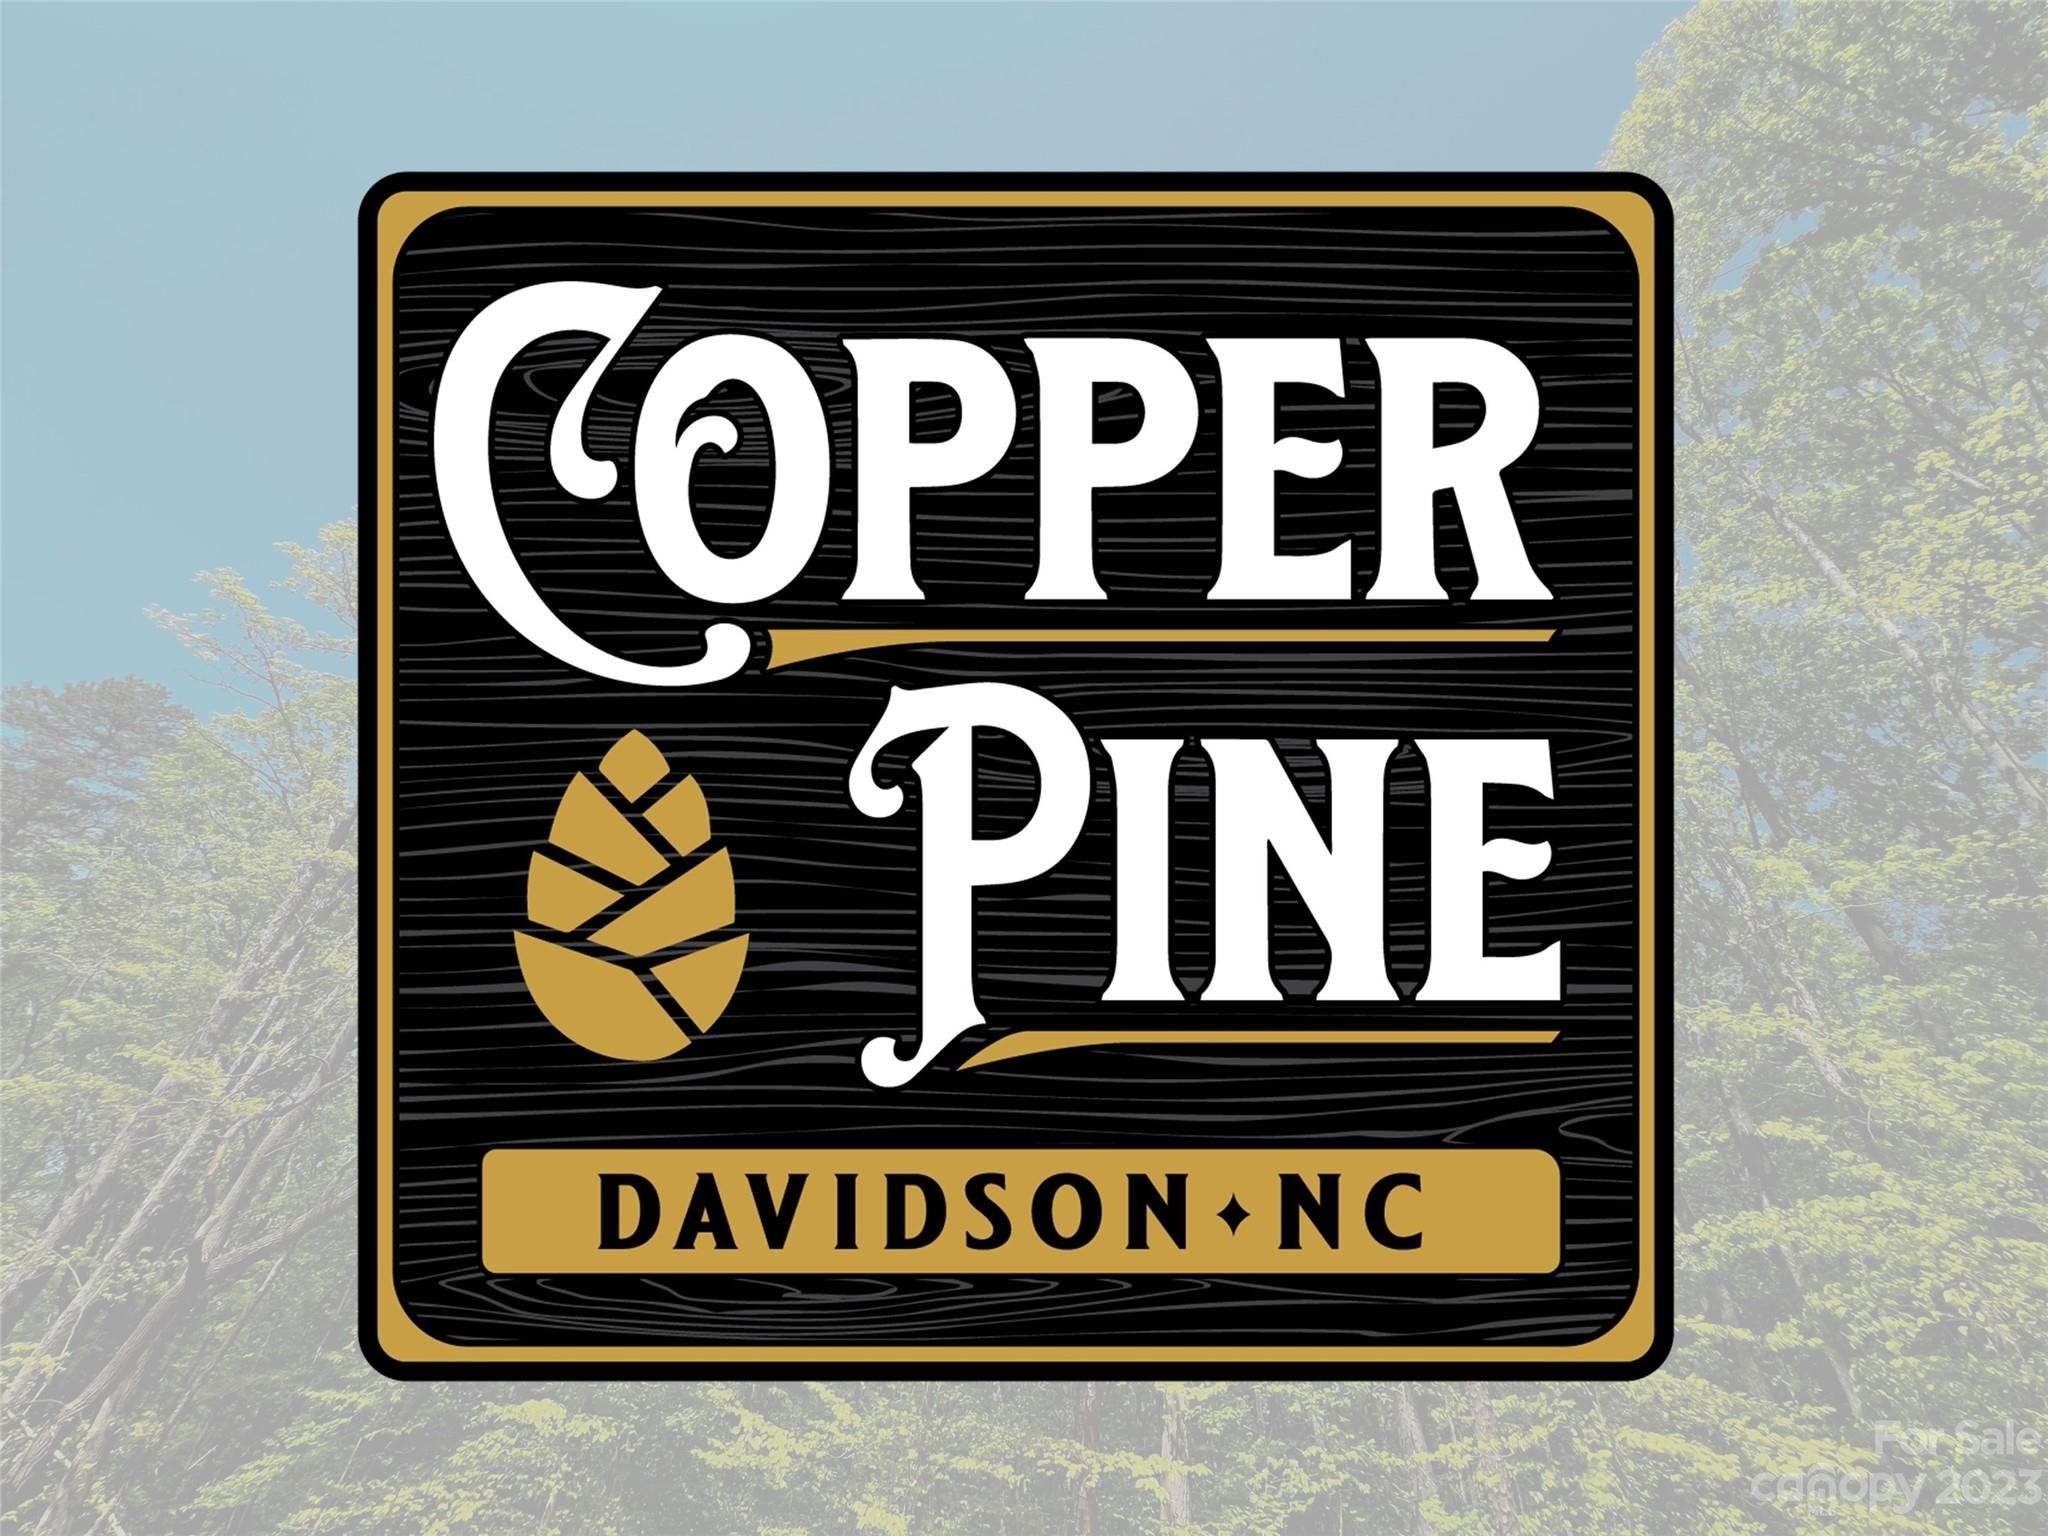 8. 147 Copper Pine Lane